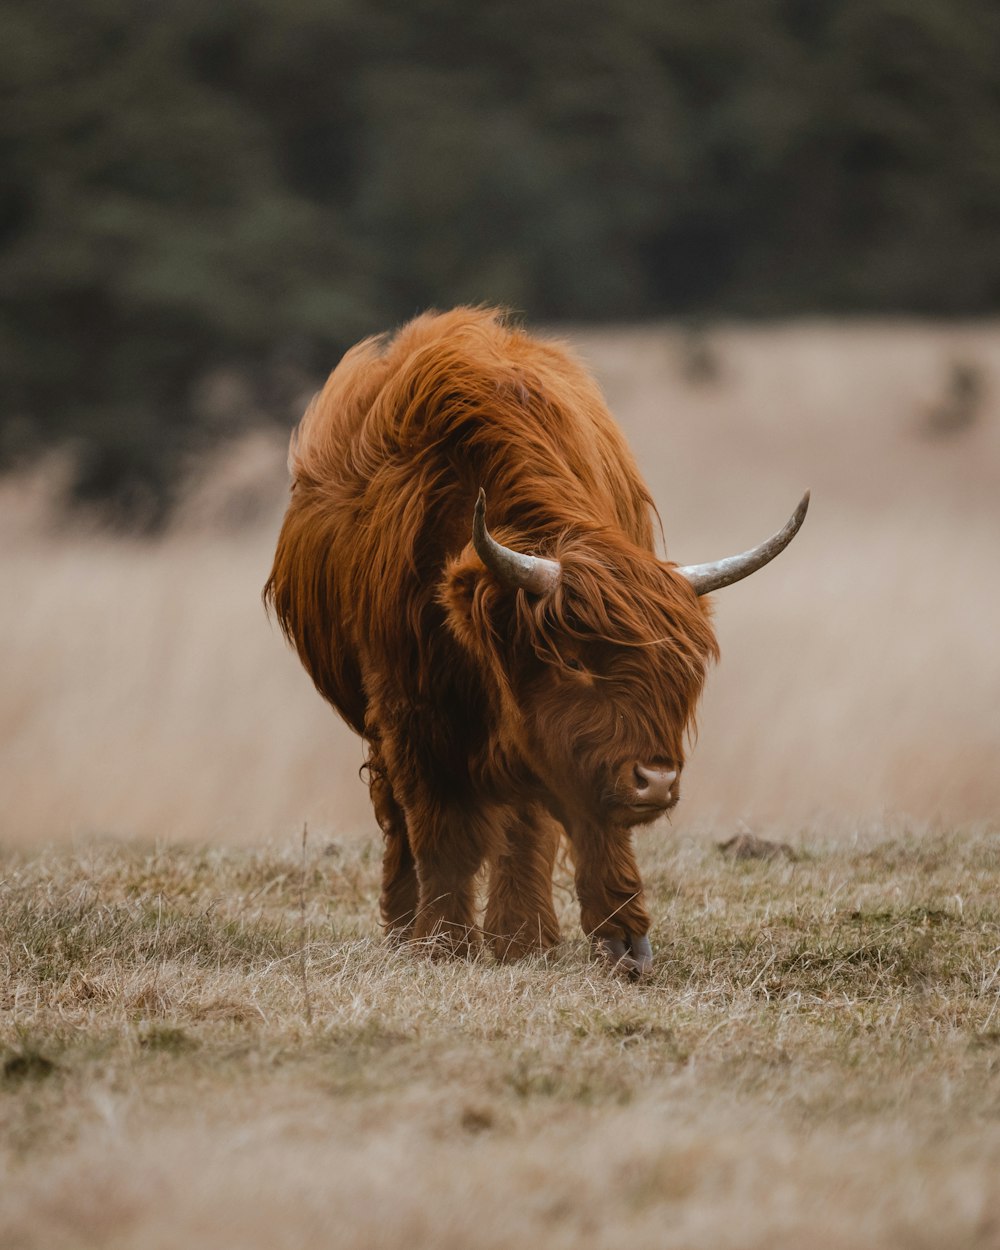 a long horn bull standing in a dry grass field